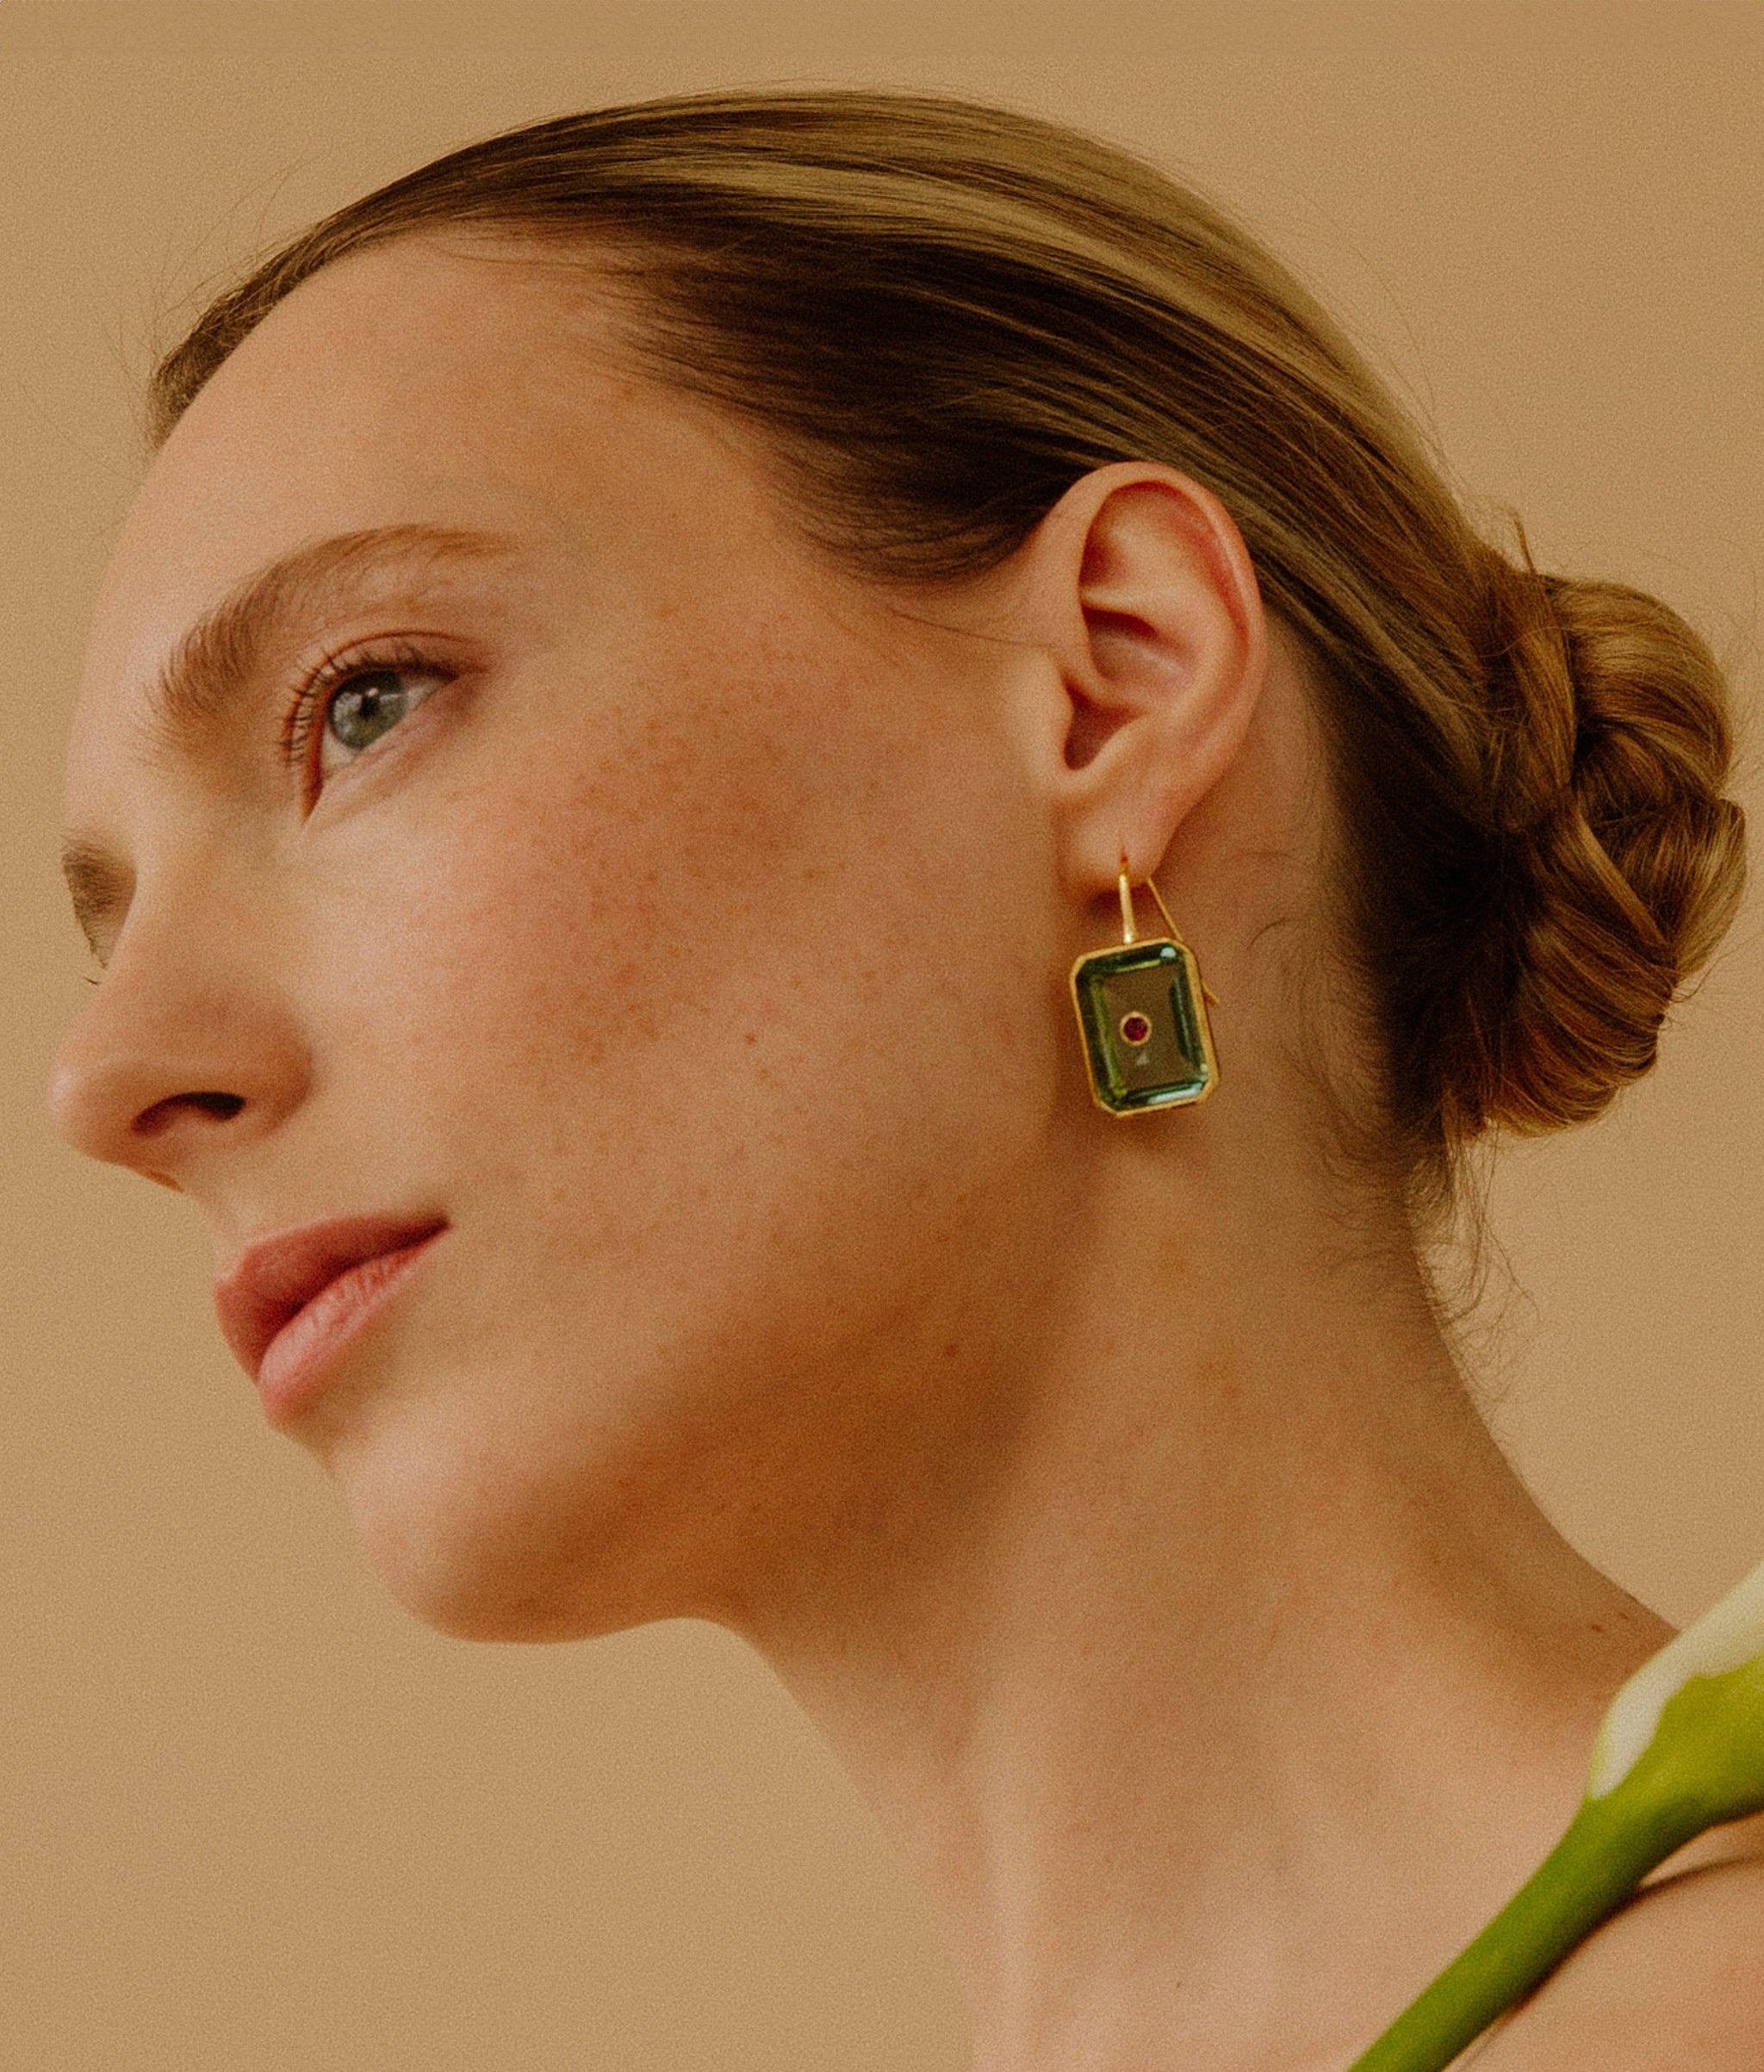 Model on tan background wearing the Tile Earrings in Aqua.